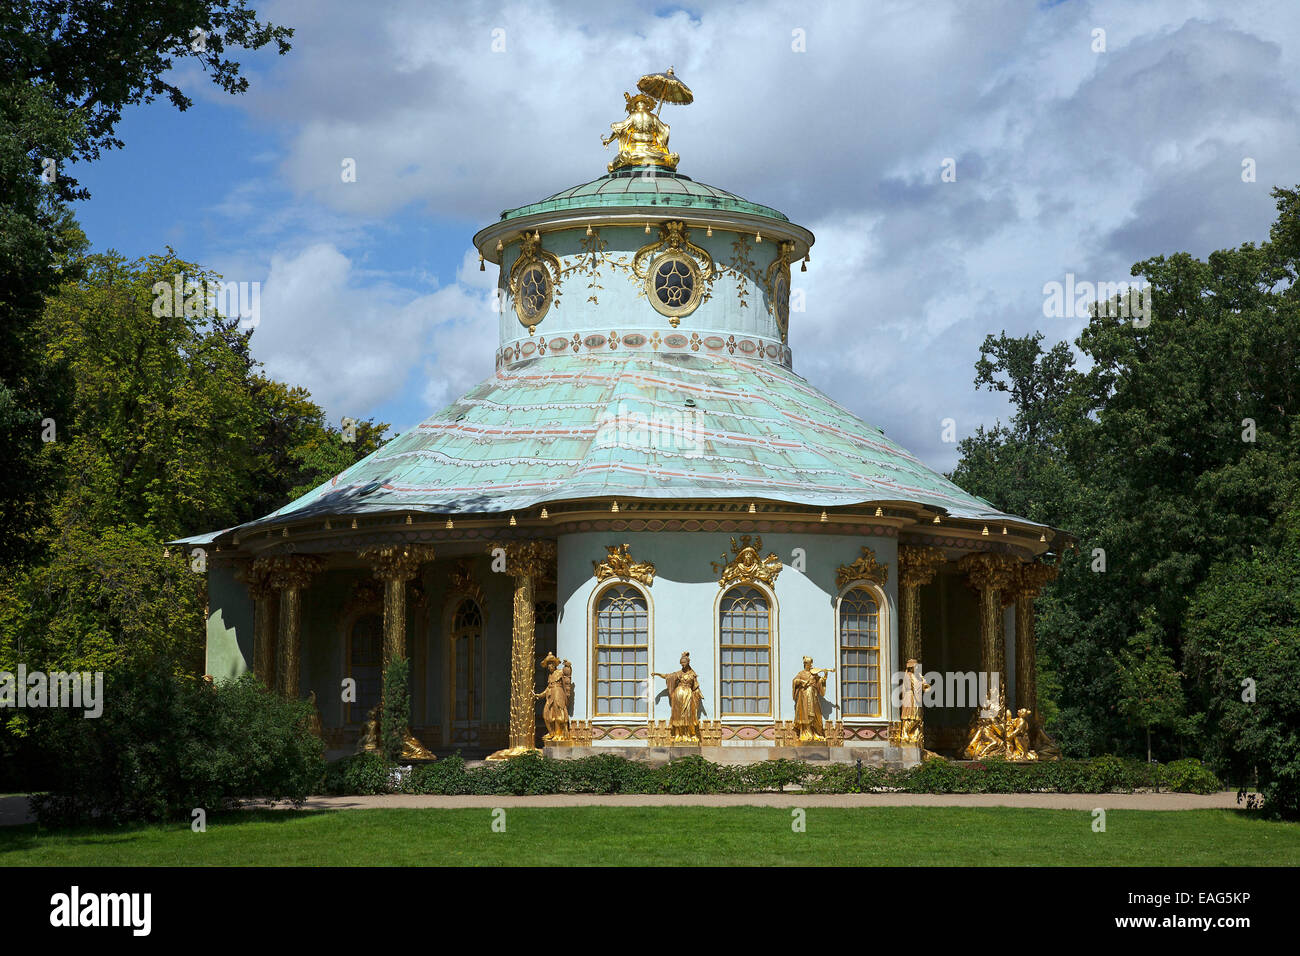 Maison / chinois Chinesisches Haus, pavillon de jardin dans la Chinoiserie style dans parc de Sanssouci à Potsdam, Brandebourg, Allemagne Banque D'Images